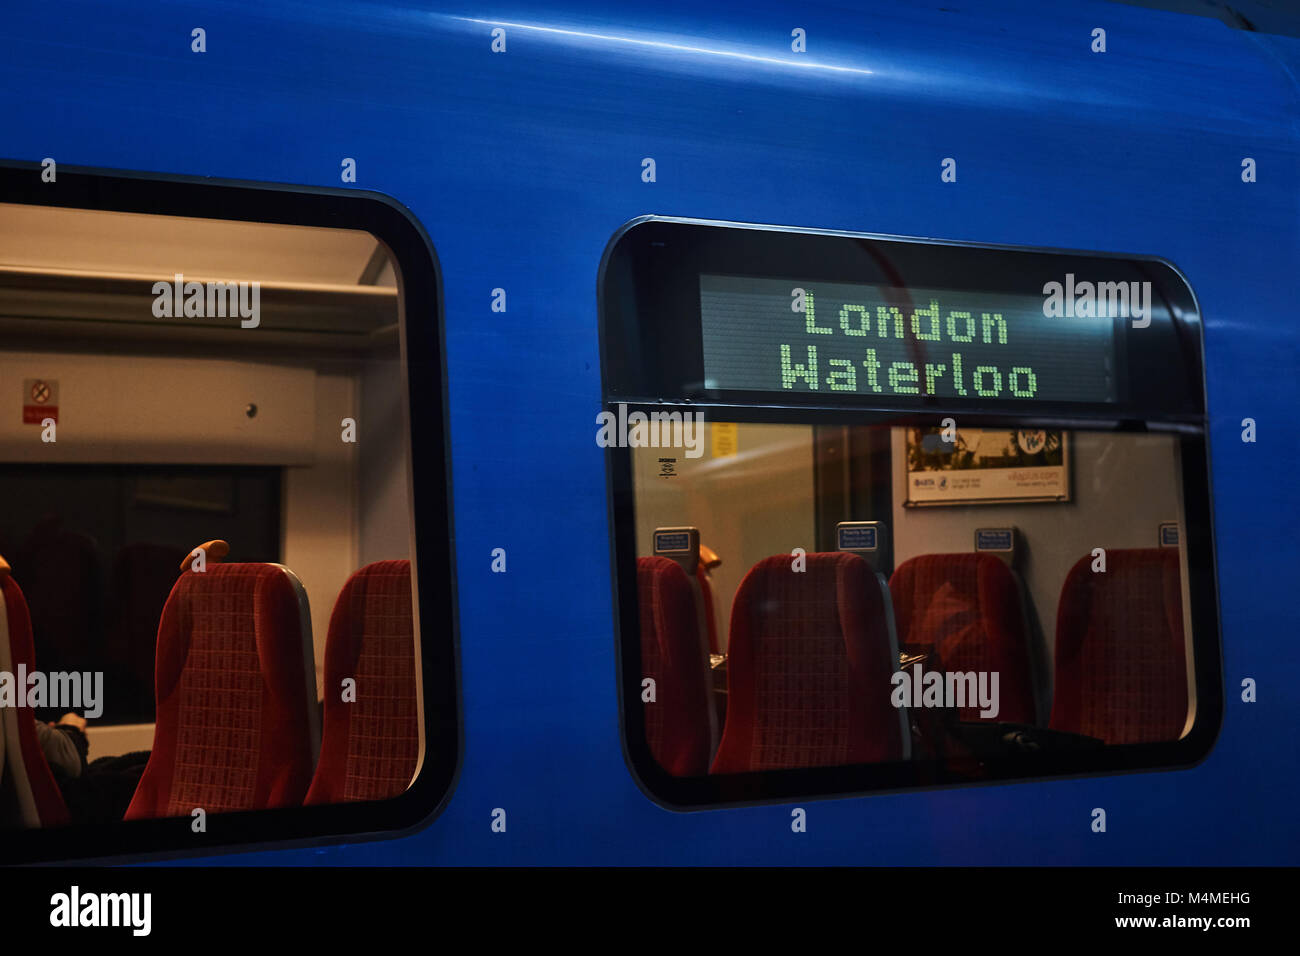 Eine südliche Rail Zug blau, mit dem Ziel von London Waterloo" an der Seite des Zuges, Sitze sichtbar im Inneren des Schlittens auf dem Bahnhof warten Stockfoto